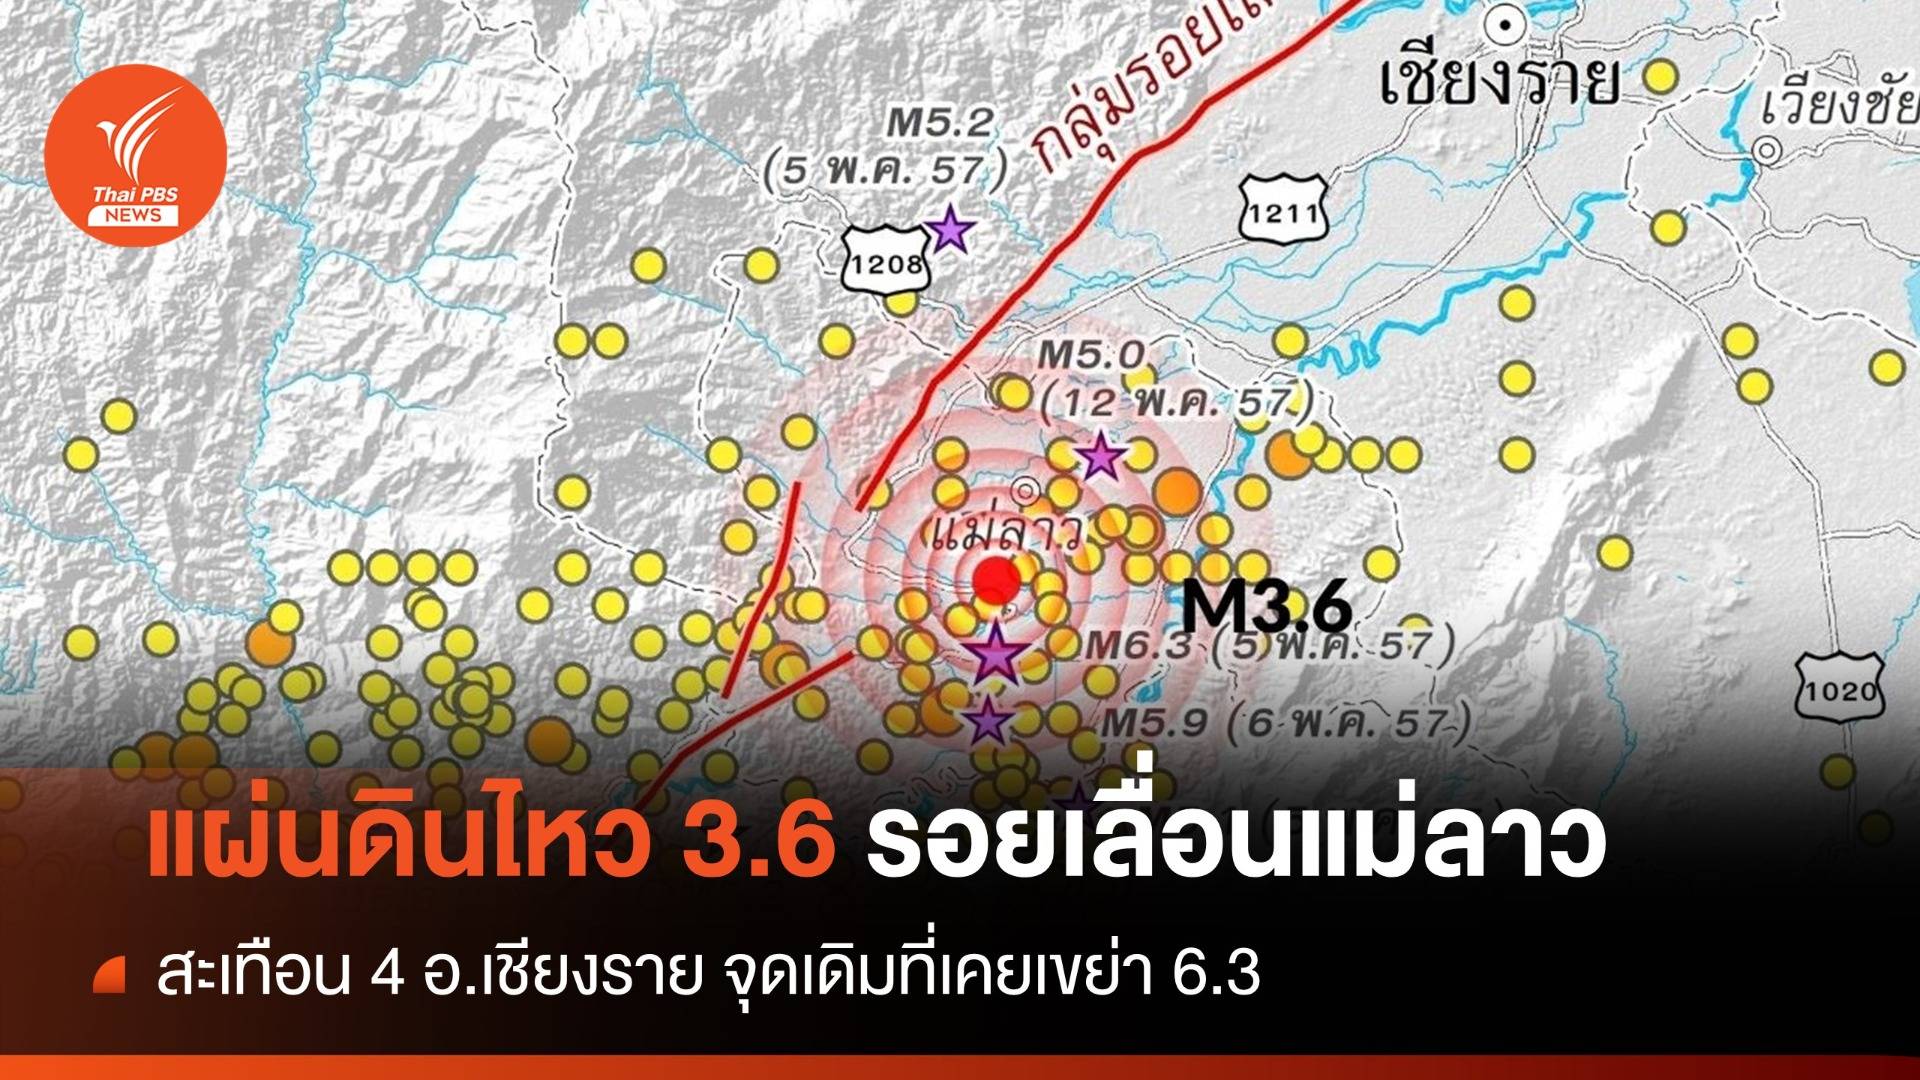 แผ่นดินไหว 3.6 บ้านดงมะดะ "รอยเลื่อนแม่ลาว"จุดที่เคยเขย่า 6.3 